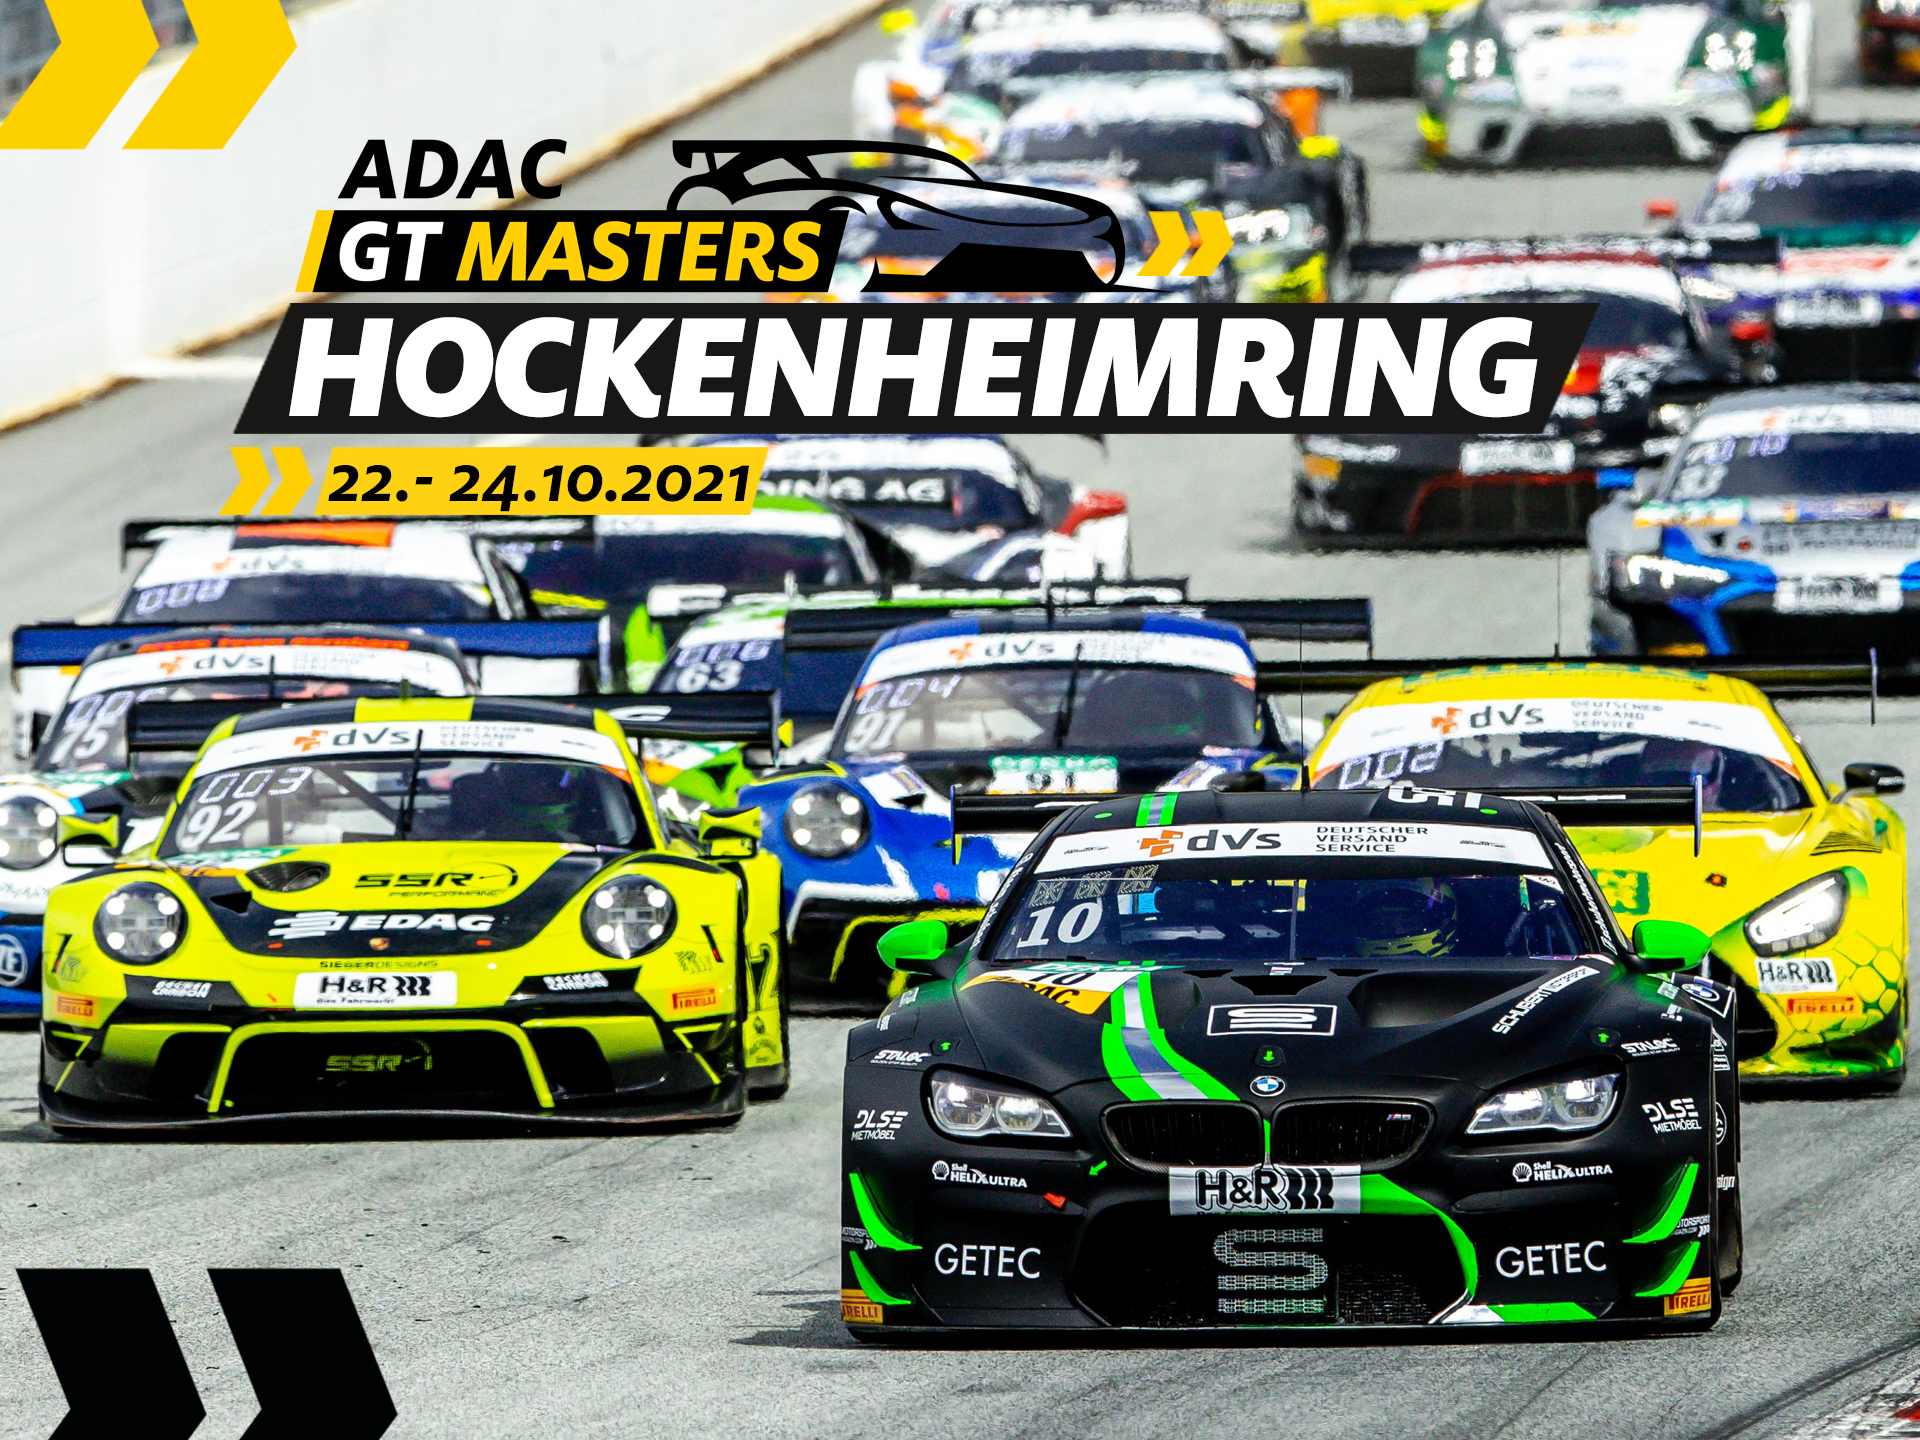 ADAC GT Masters Hockenheim // Imposante Fahrzeuge, imposante Teilnehmerfelder